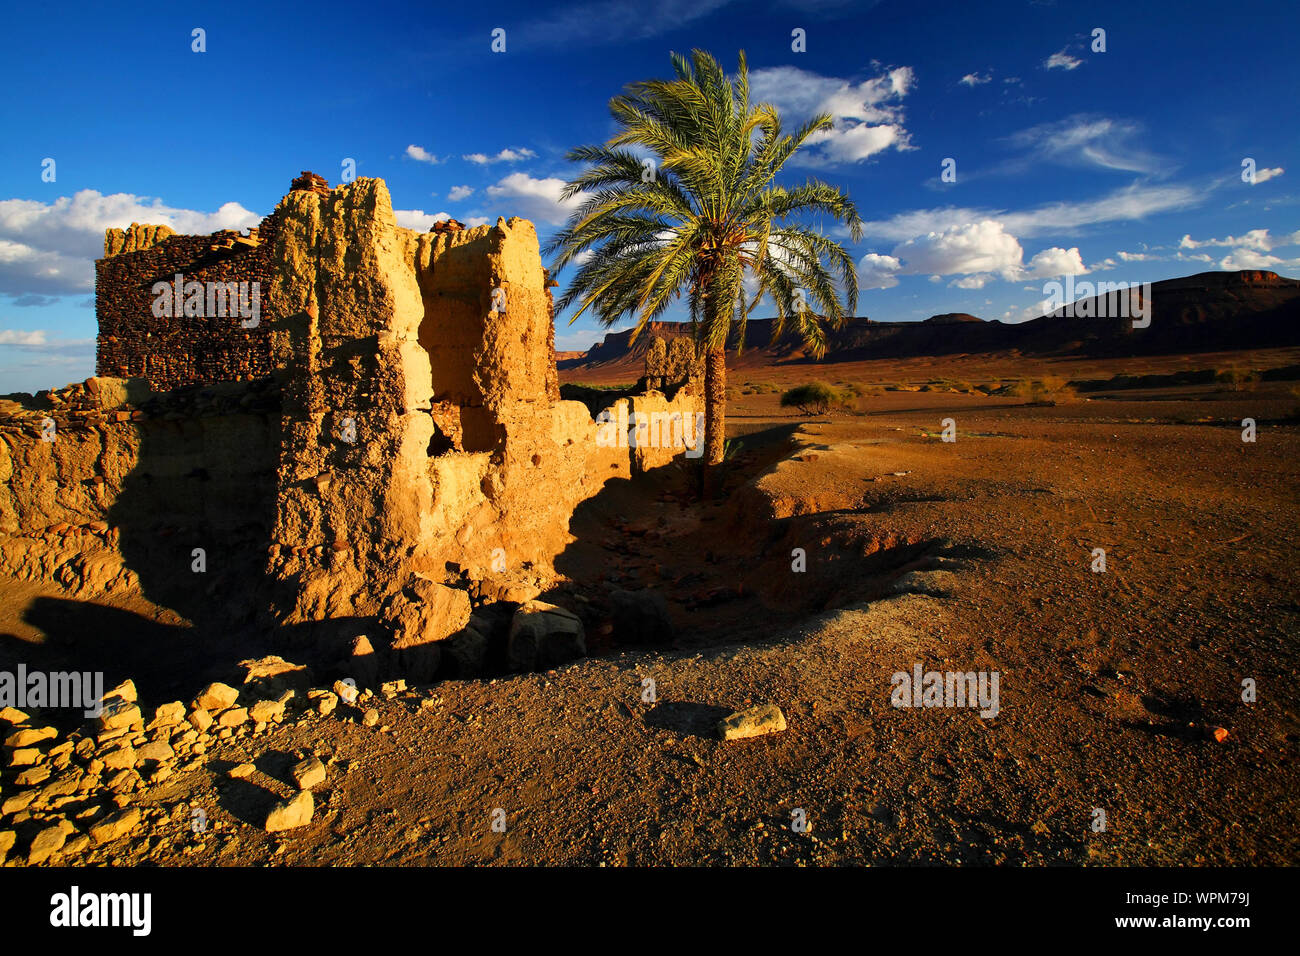 Old Ruin In Desert Against Sky Stock Photo